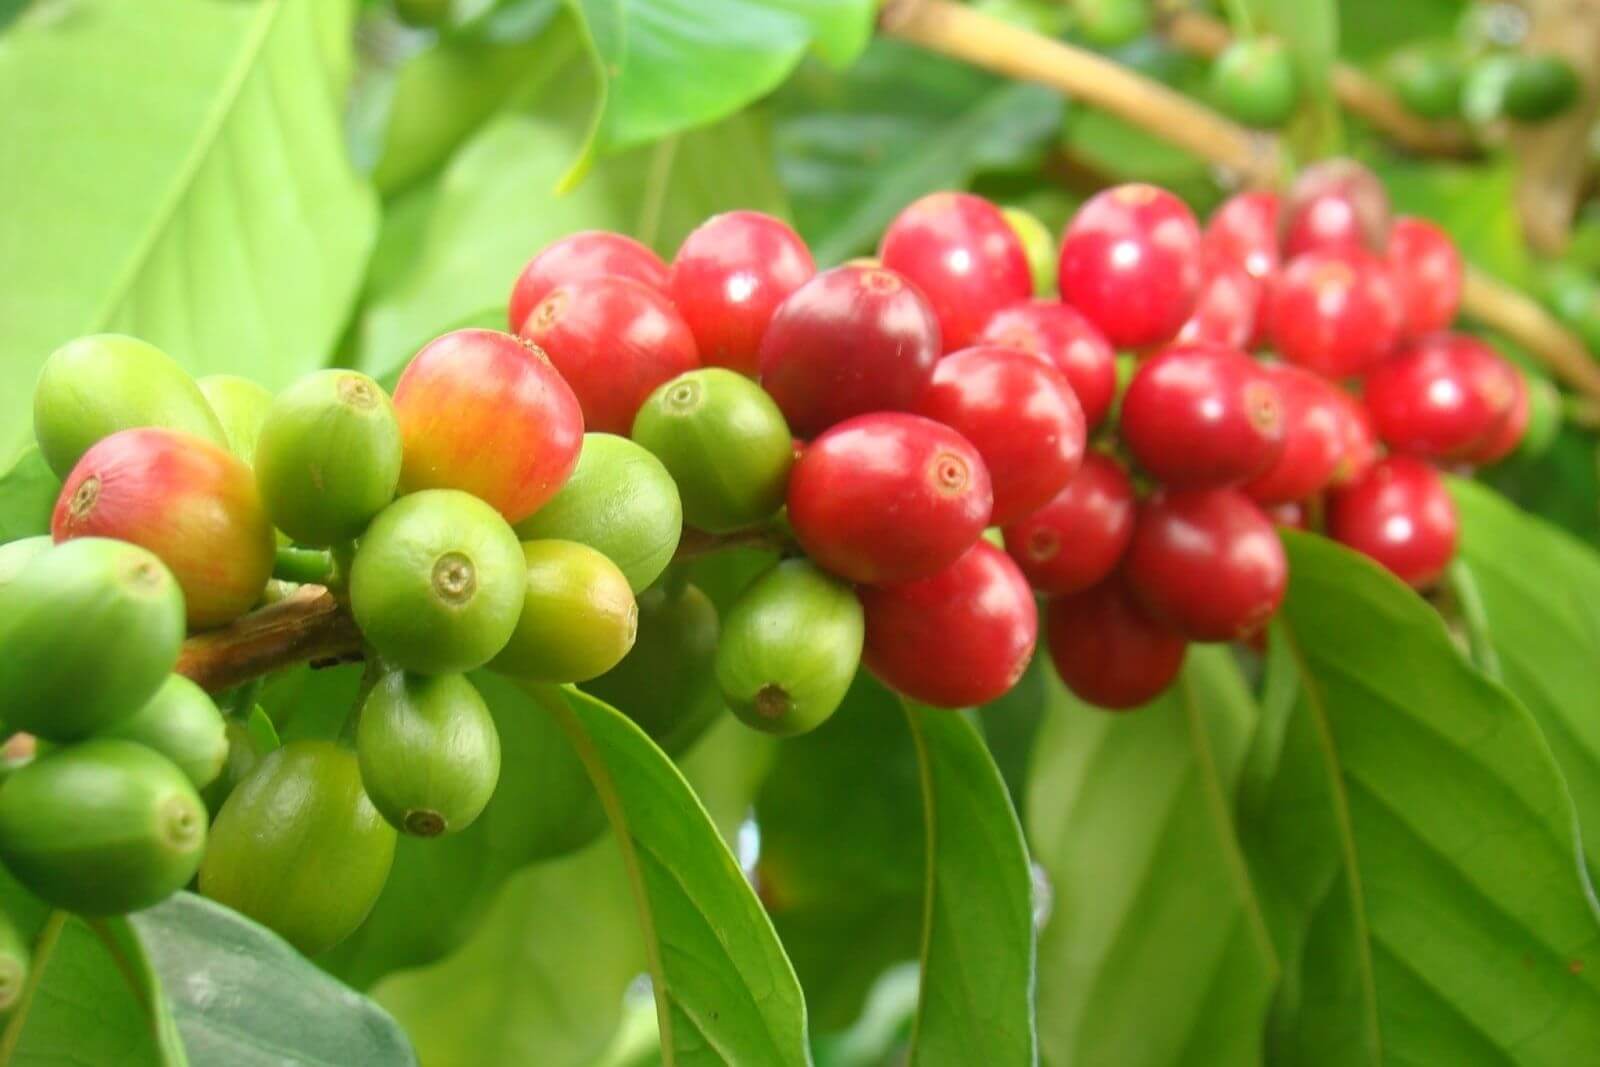 Le Vietnam produit-il du café Arabica ? Questions et réponses sur le café arabica au Vietnam